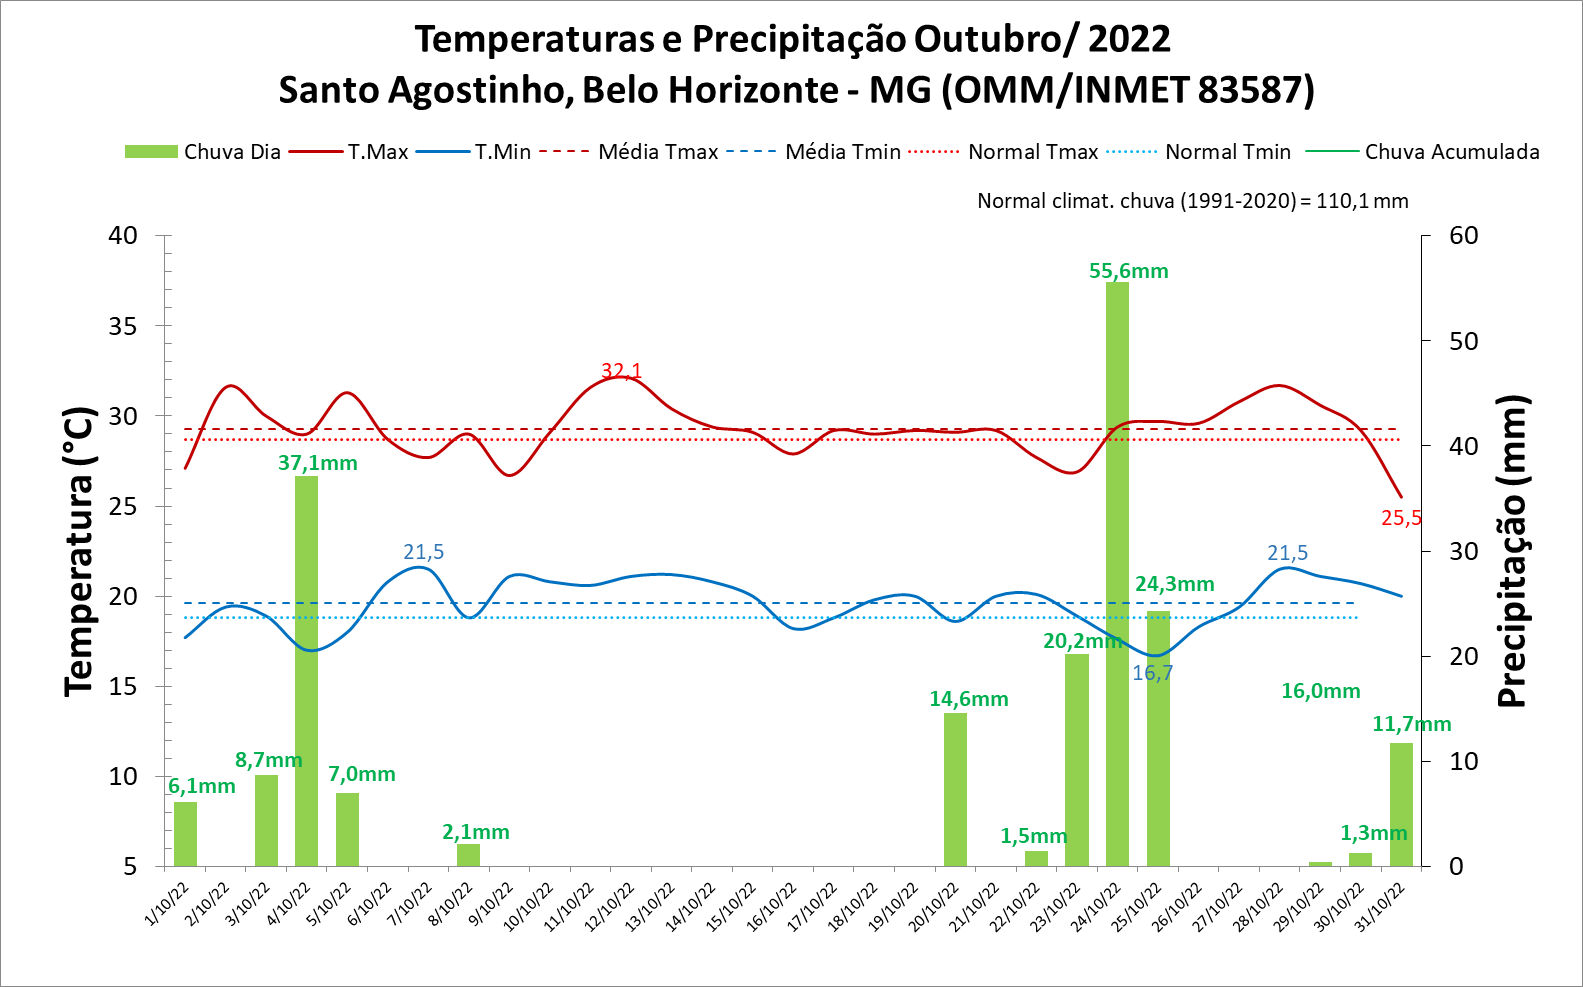 Balanço: Belo Horizonte (MG) registrou índices de umidade menores que 30% no mês de outubro